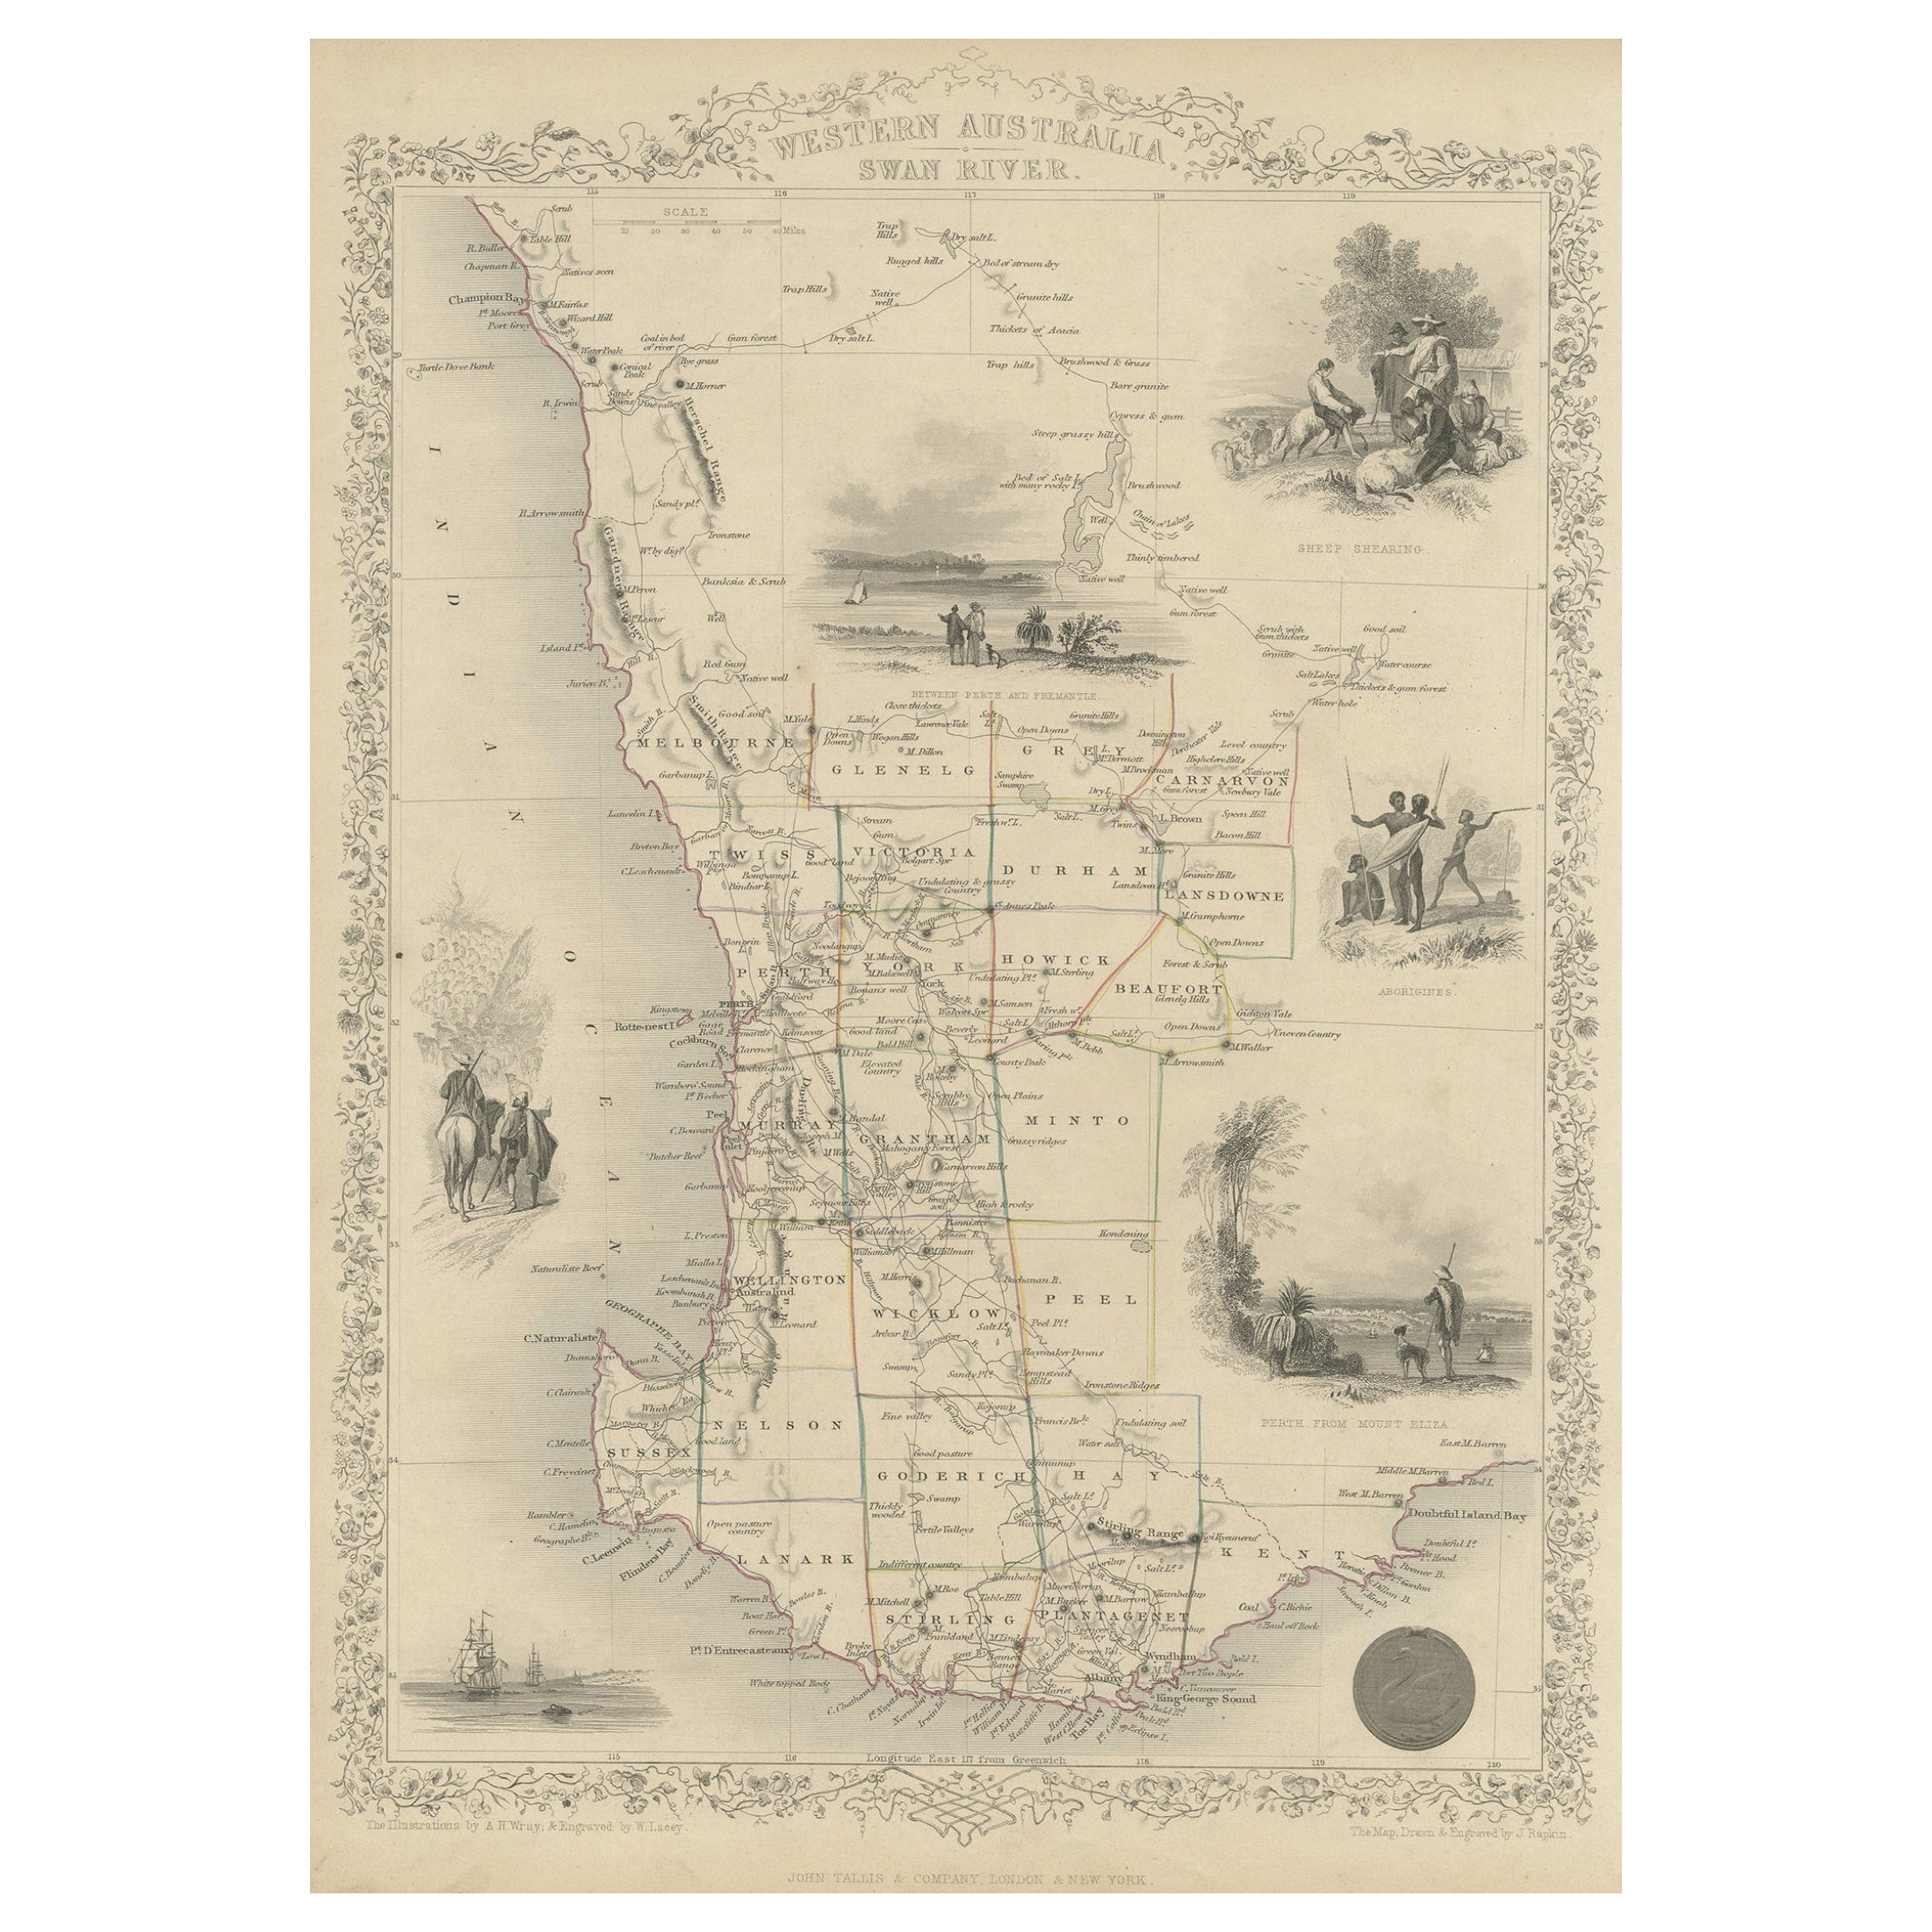 Map of Western Australia & Swan River, Einsätze von Perth, Aborigines, Schafe, 1851